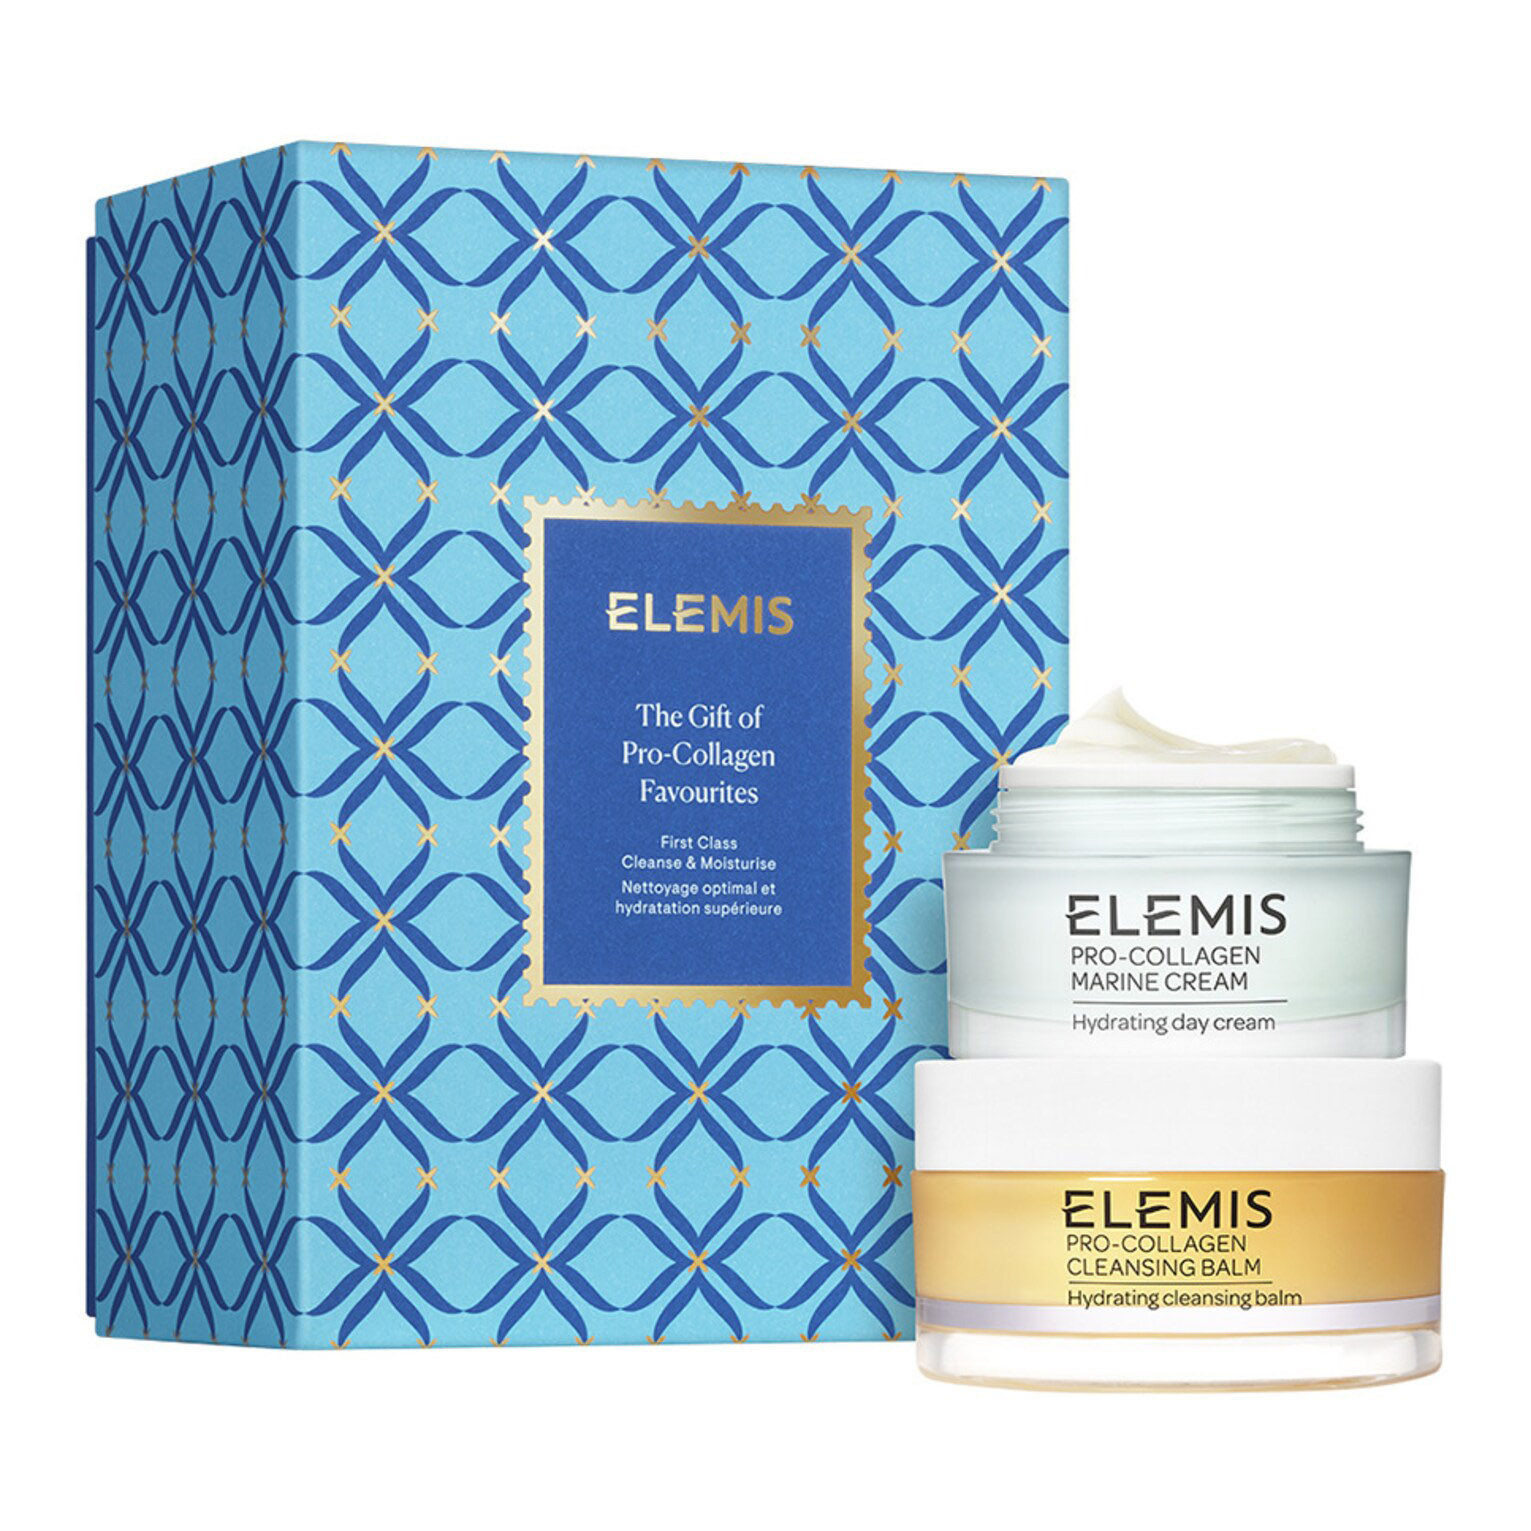 Подарочный набор Elemis The Gift Of Pro-Collagen, 2 предмета подарочный набор elemis hero skin stories